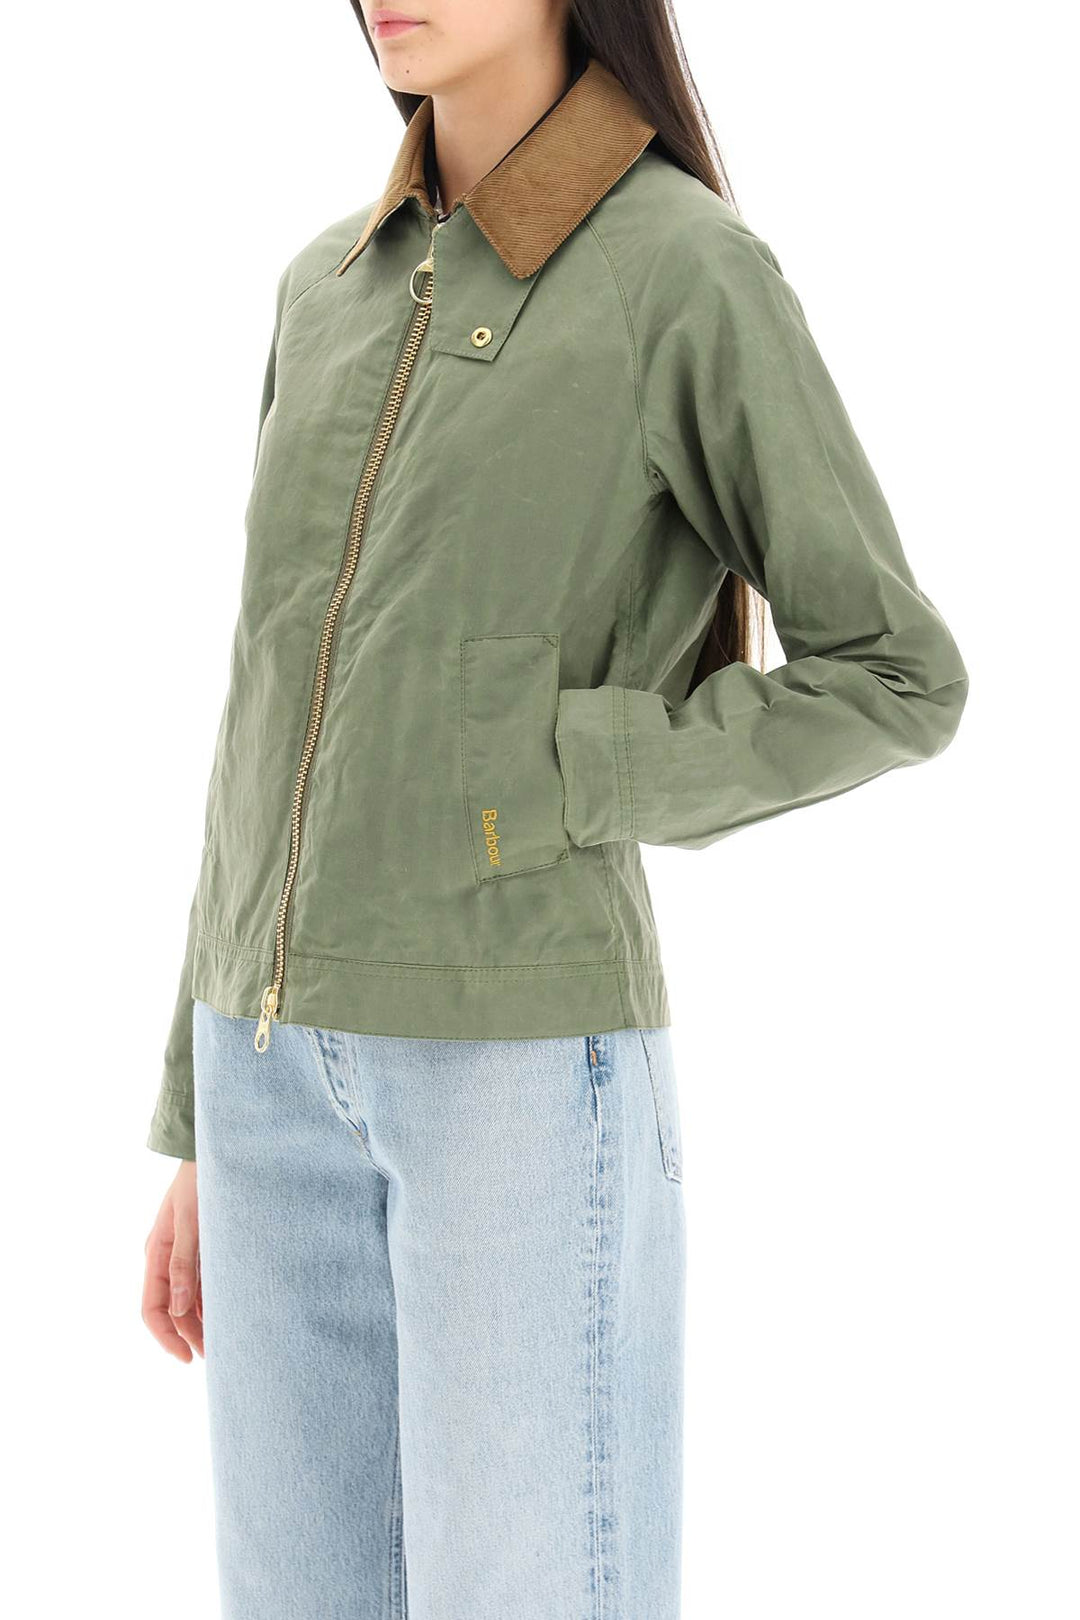 Barbour campbell vintage overshirt jacket-3